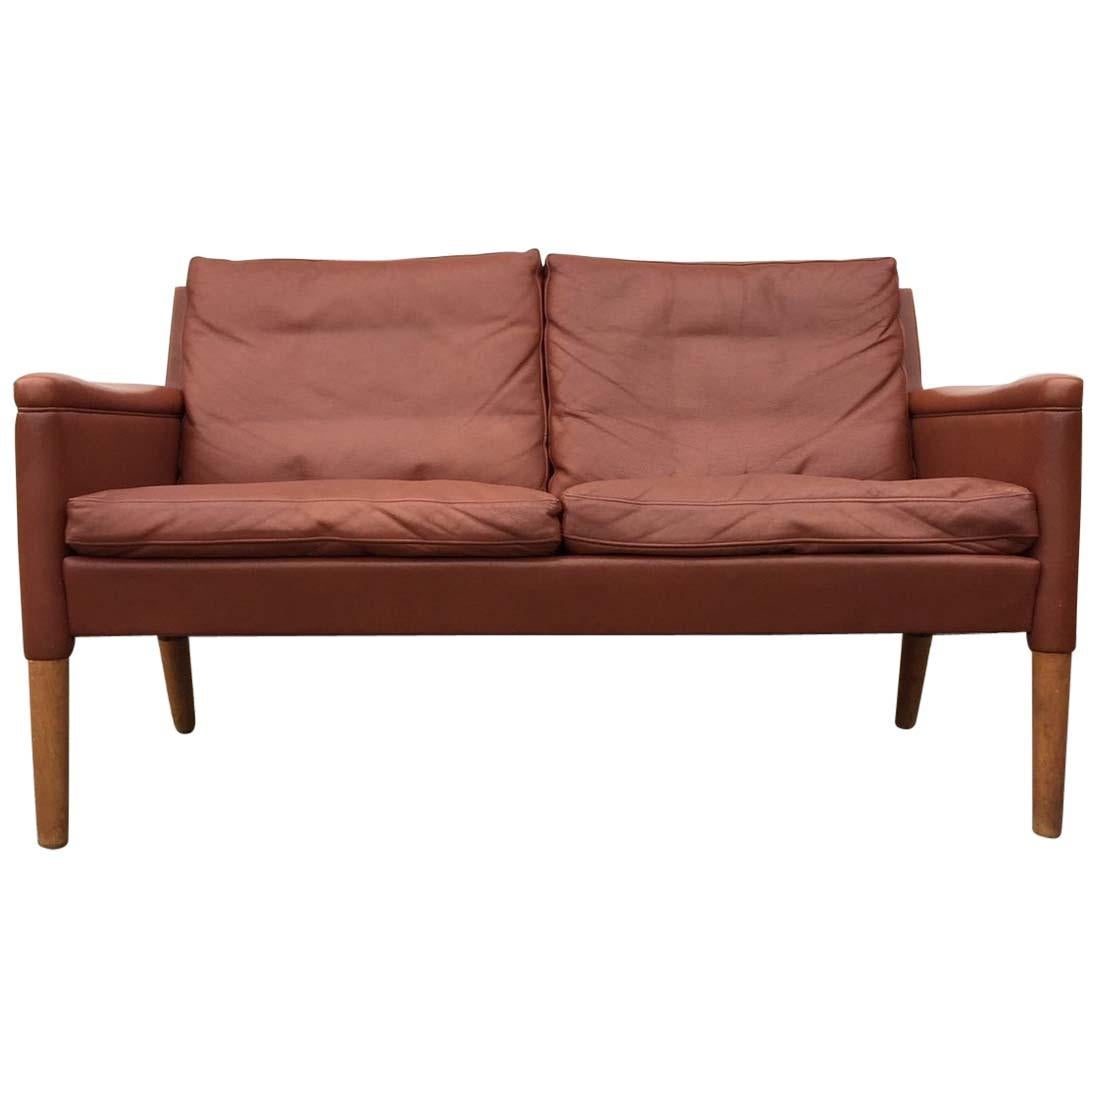 Settee-Sofa moderne danois en cuir brun cognac, modèle 55 de Kurt stervig en vente